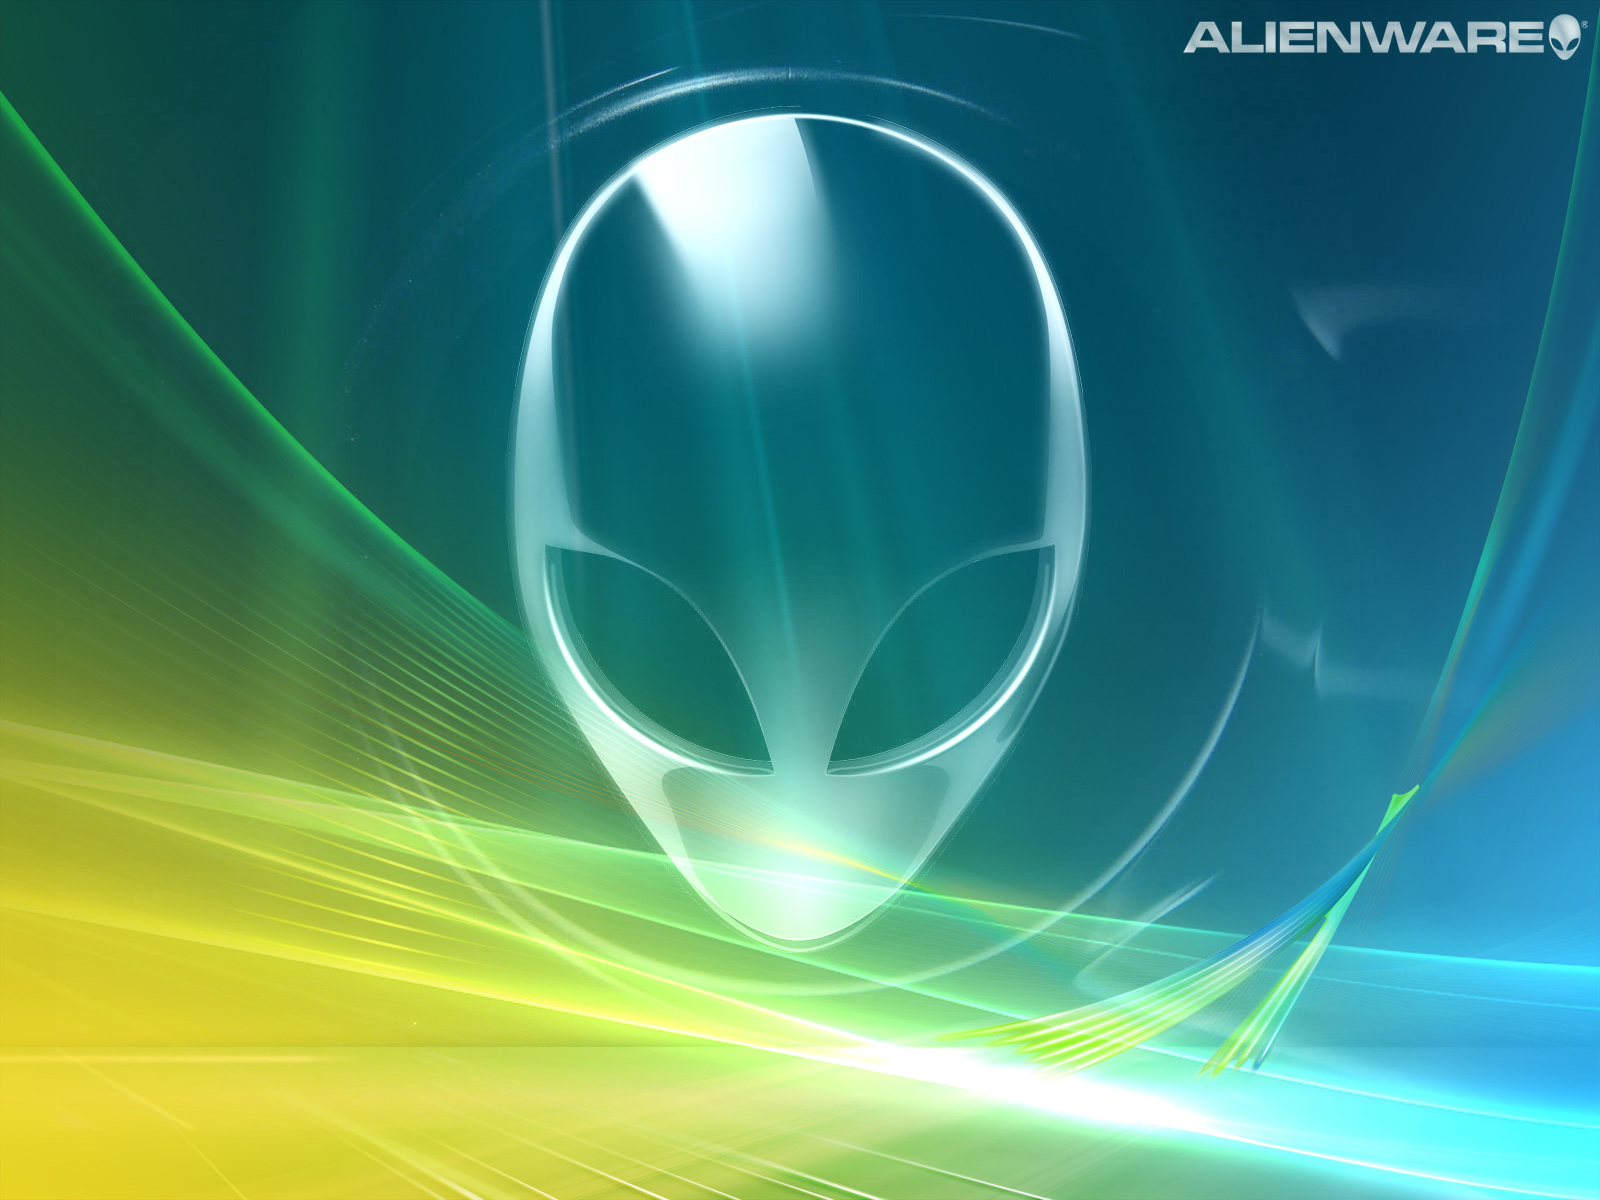 Alienware Vista 2 Wallpapers - 1600x1200 - 783224